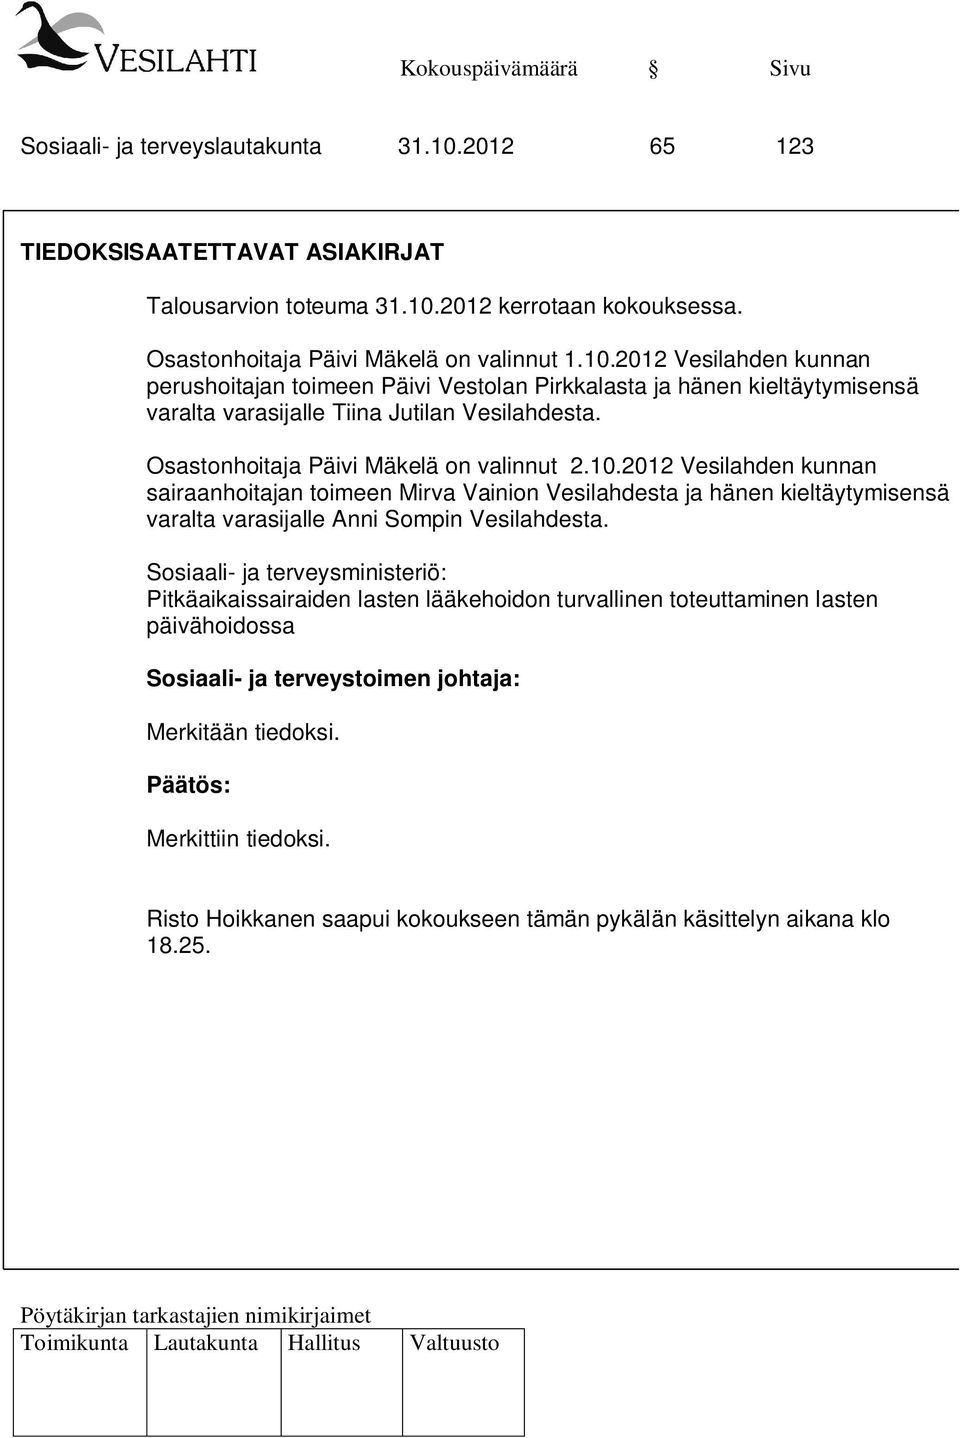 2012 Vesilahden kunnan sairaanhoitajan toimeen Mirva Vainion Vesilahdesta ja hänen kieltäytymisensä varalta varasijalle Anni Sompin Vesilahdesta.